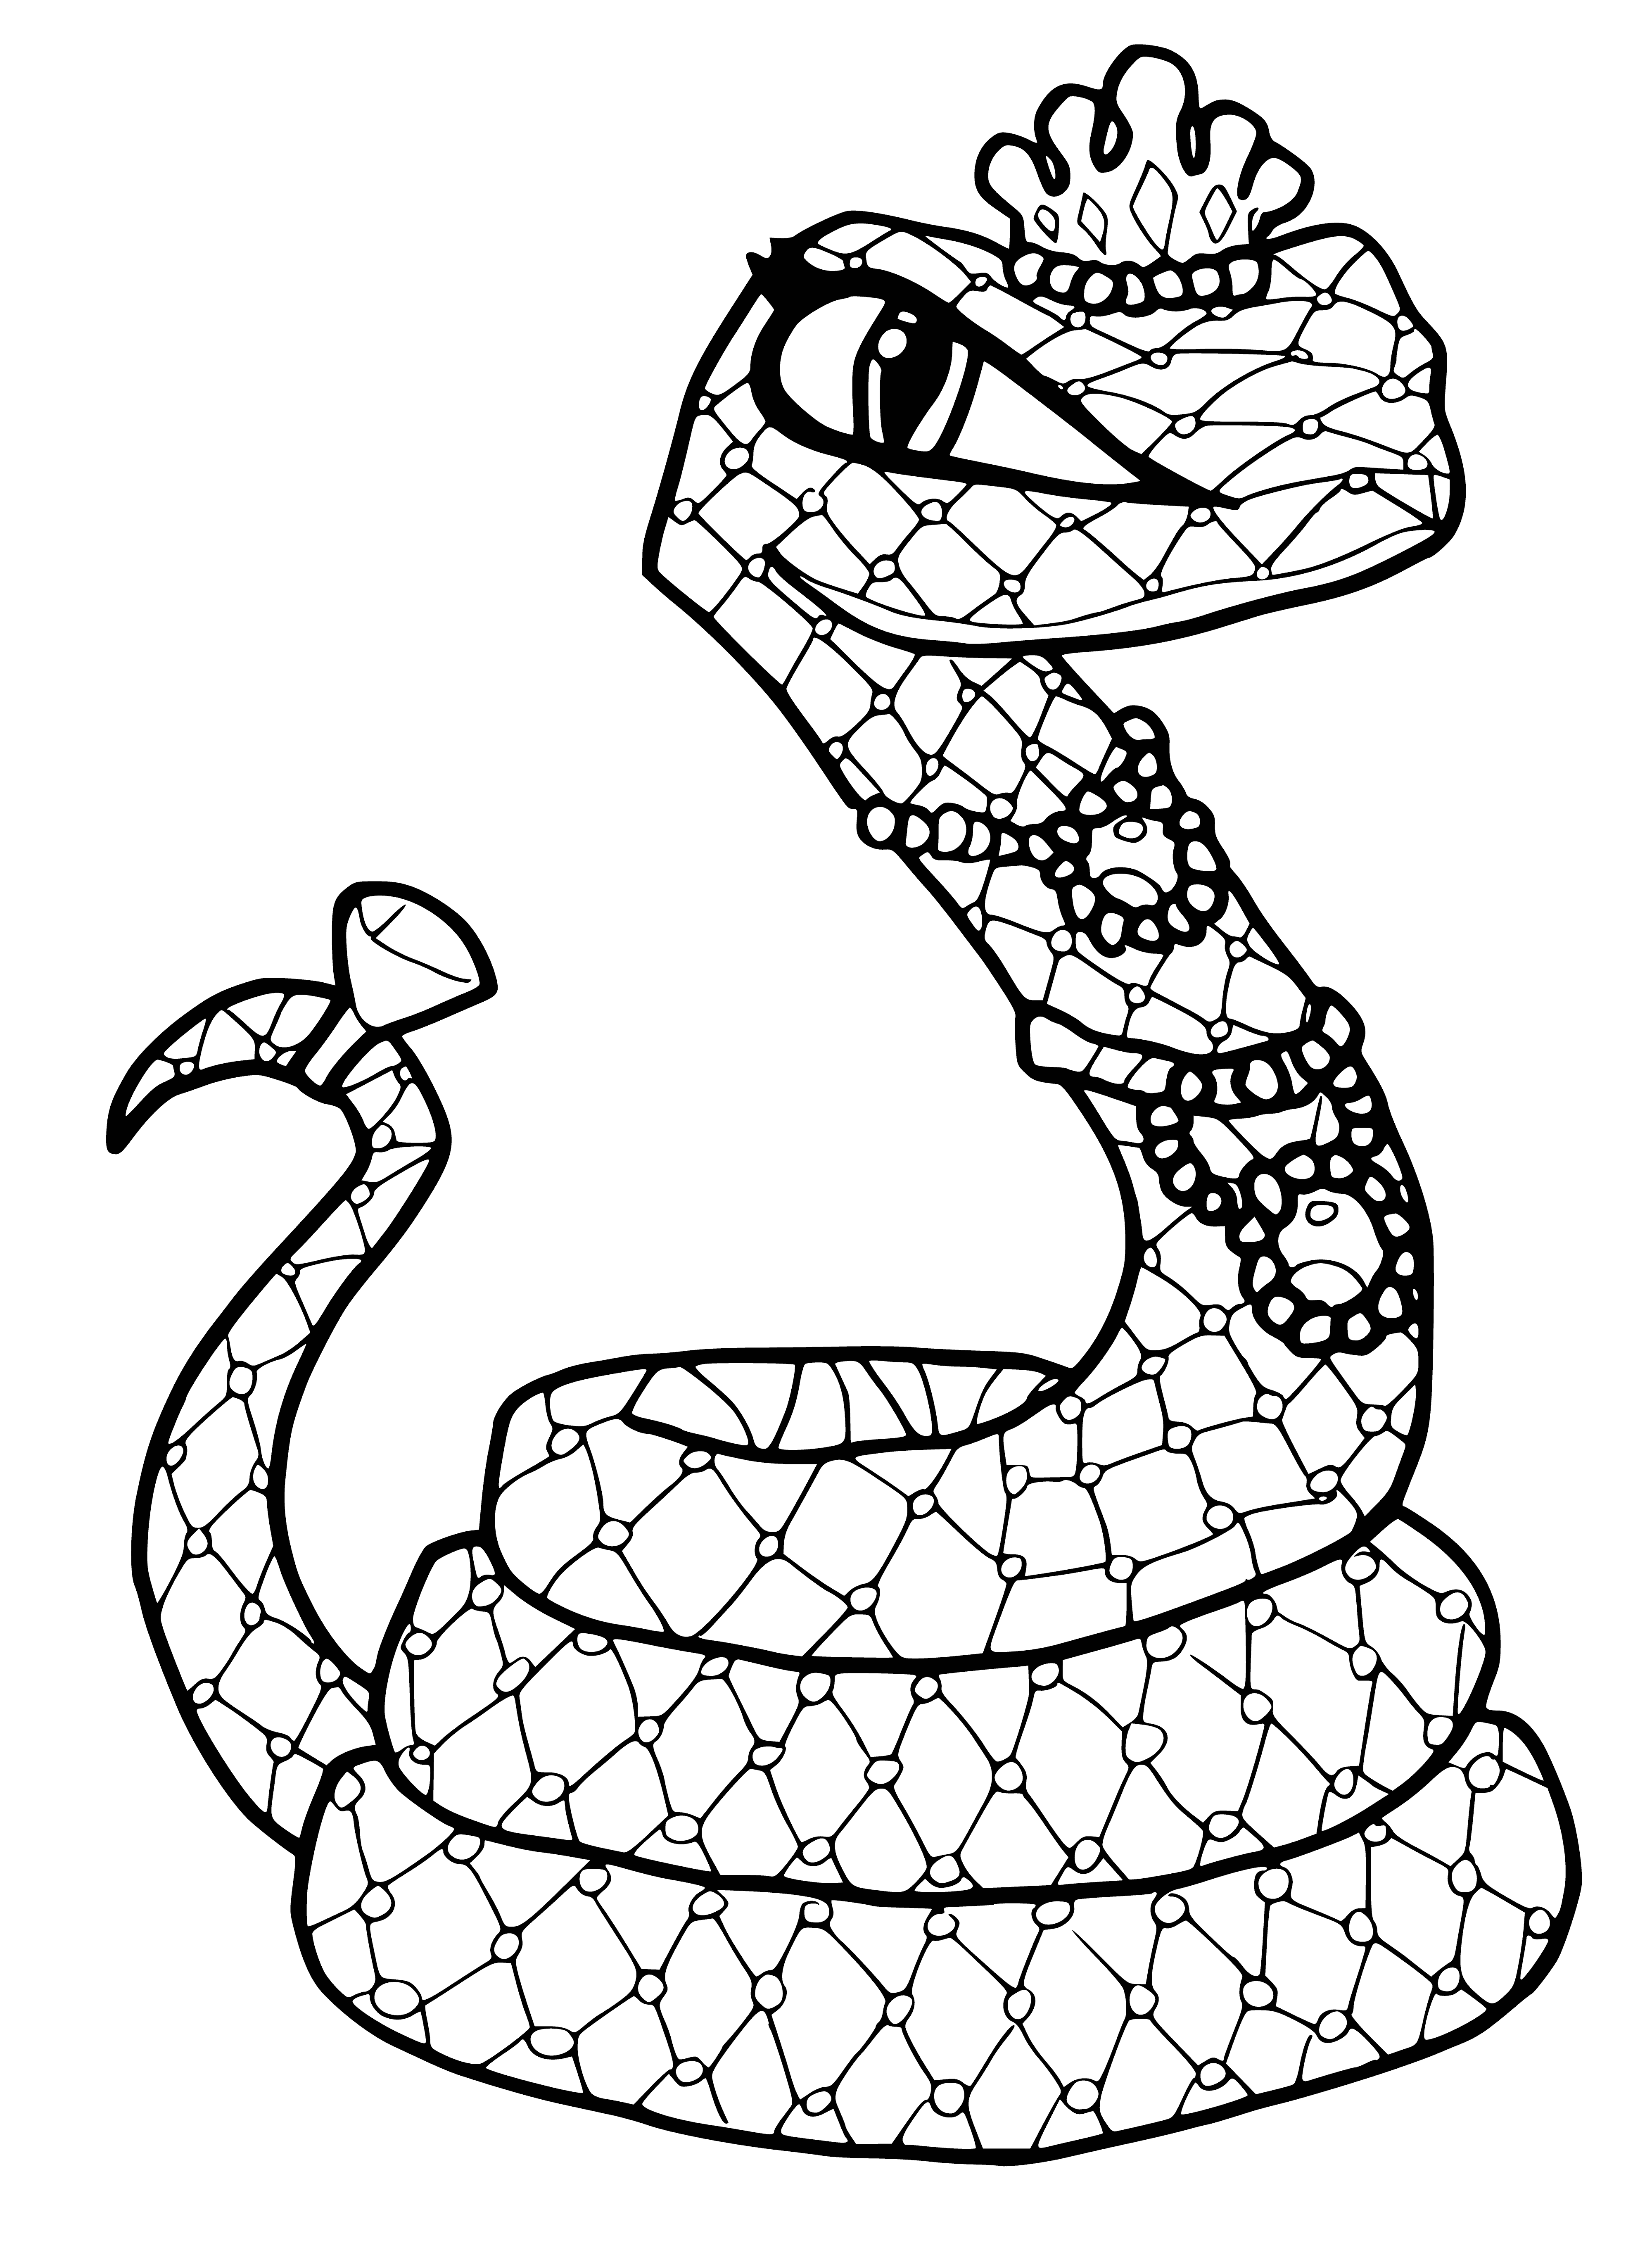 Питомец Клео де Нил - кобра Хиссета раскраска